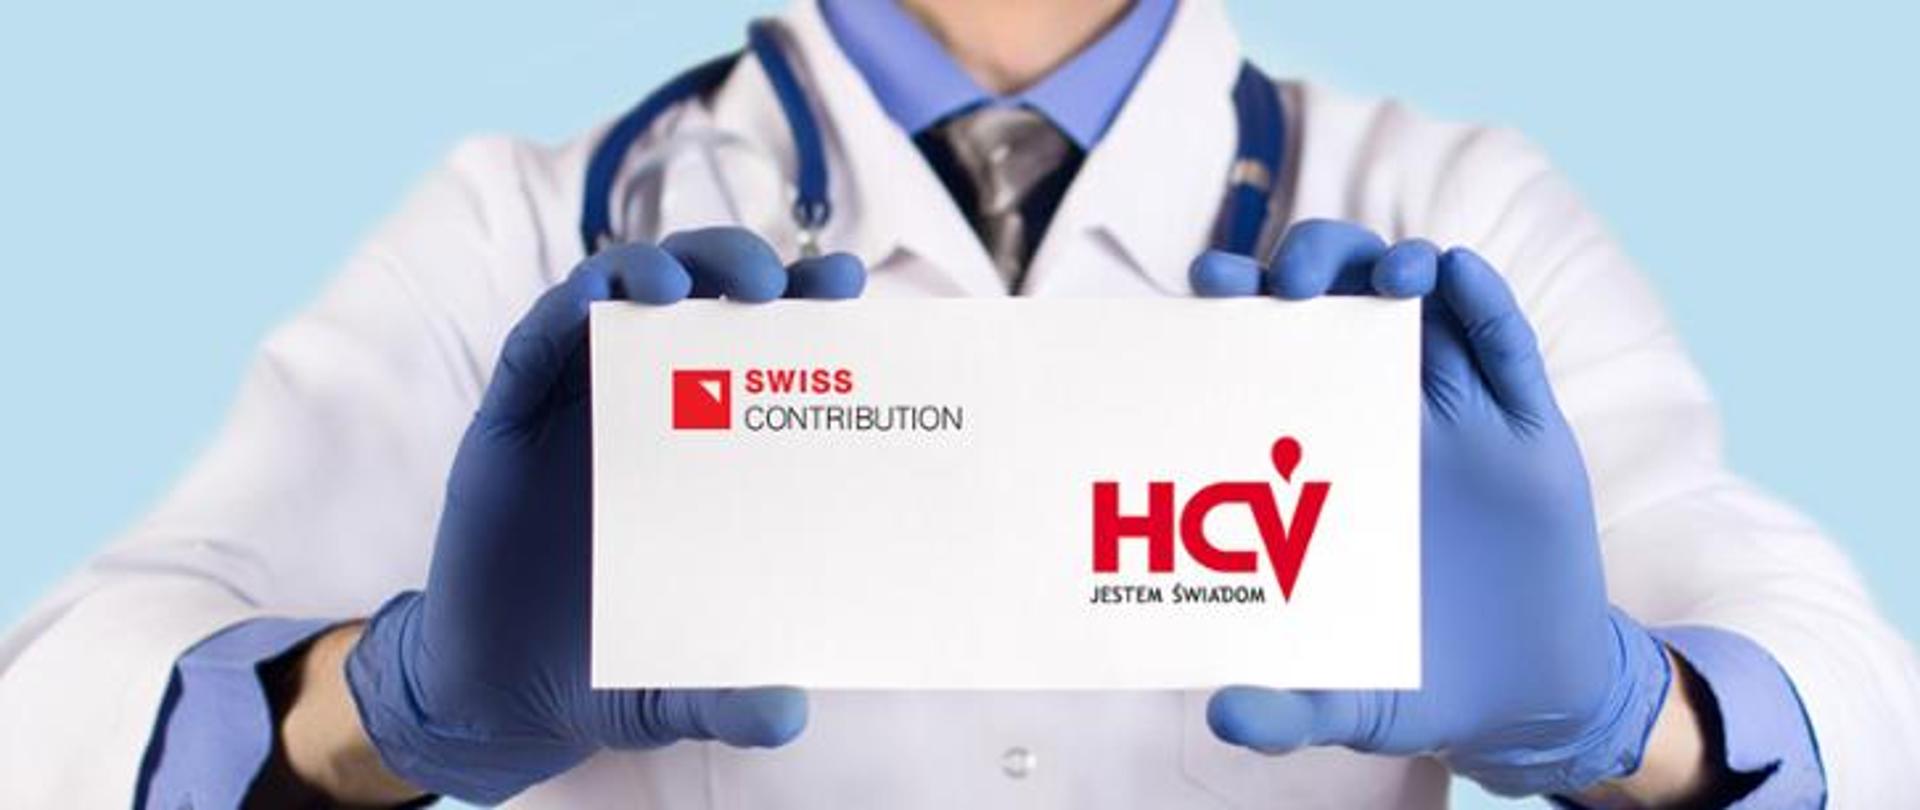 zdjęcie przedstawia lekarza trzymającego białą plakietkę, która ma w lewym górnym rogu znak SWISS CONTRIBUTION, w prawym dolnym znak HCV Jestem Świadom